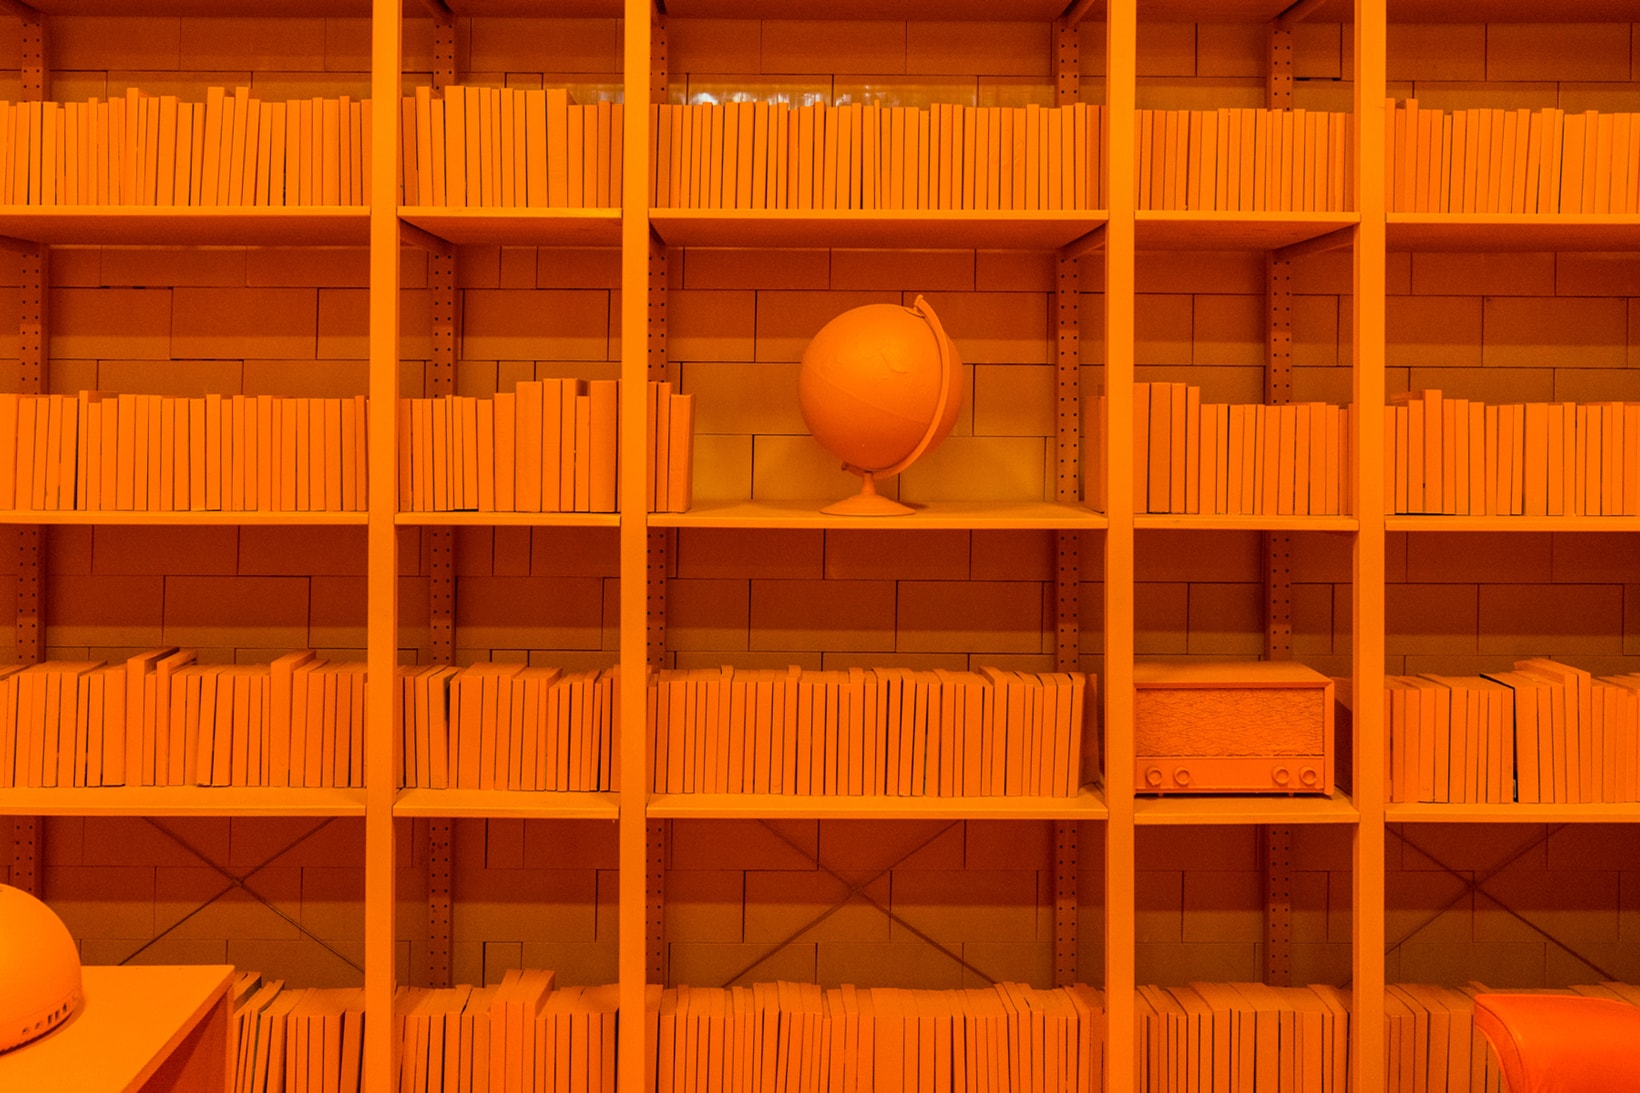 CJ Hendry Monochrome Greenpoint Brooklyn Exhibit Orange Office